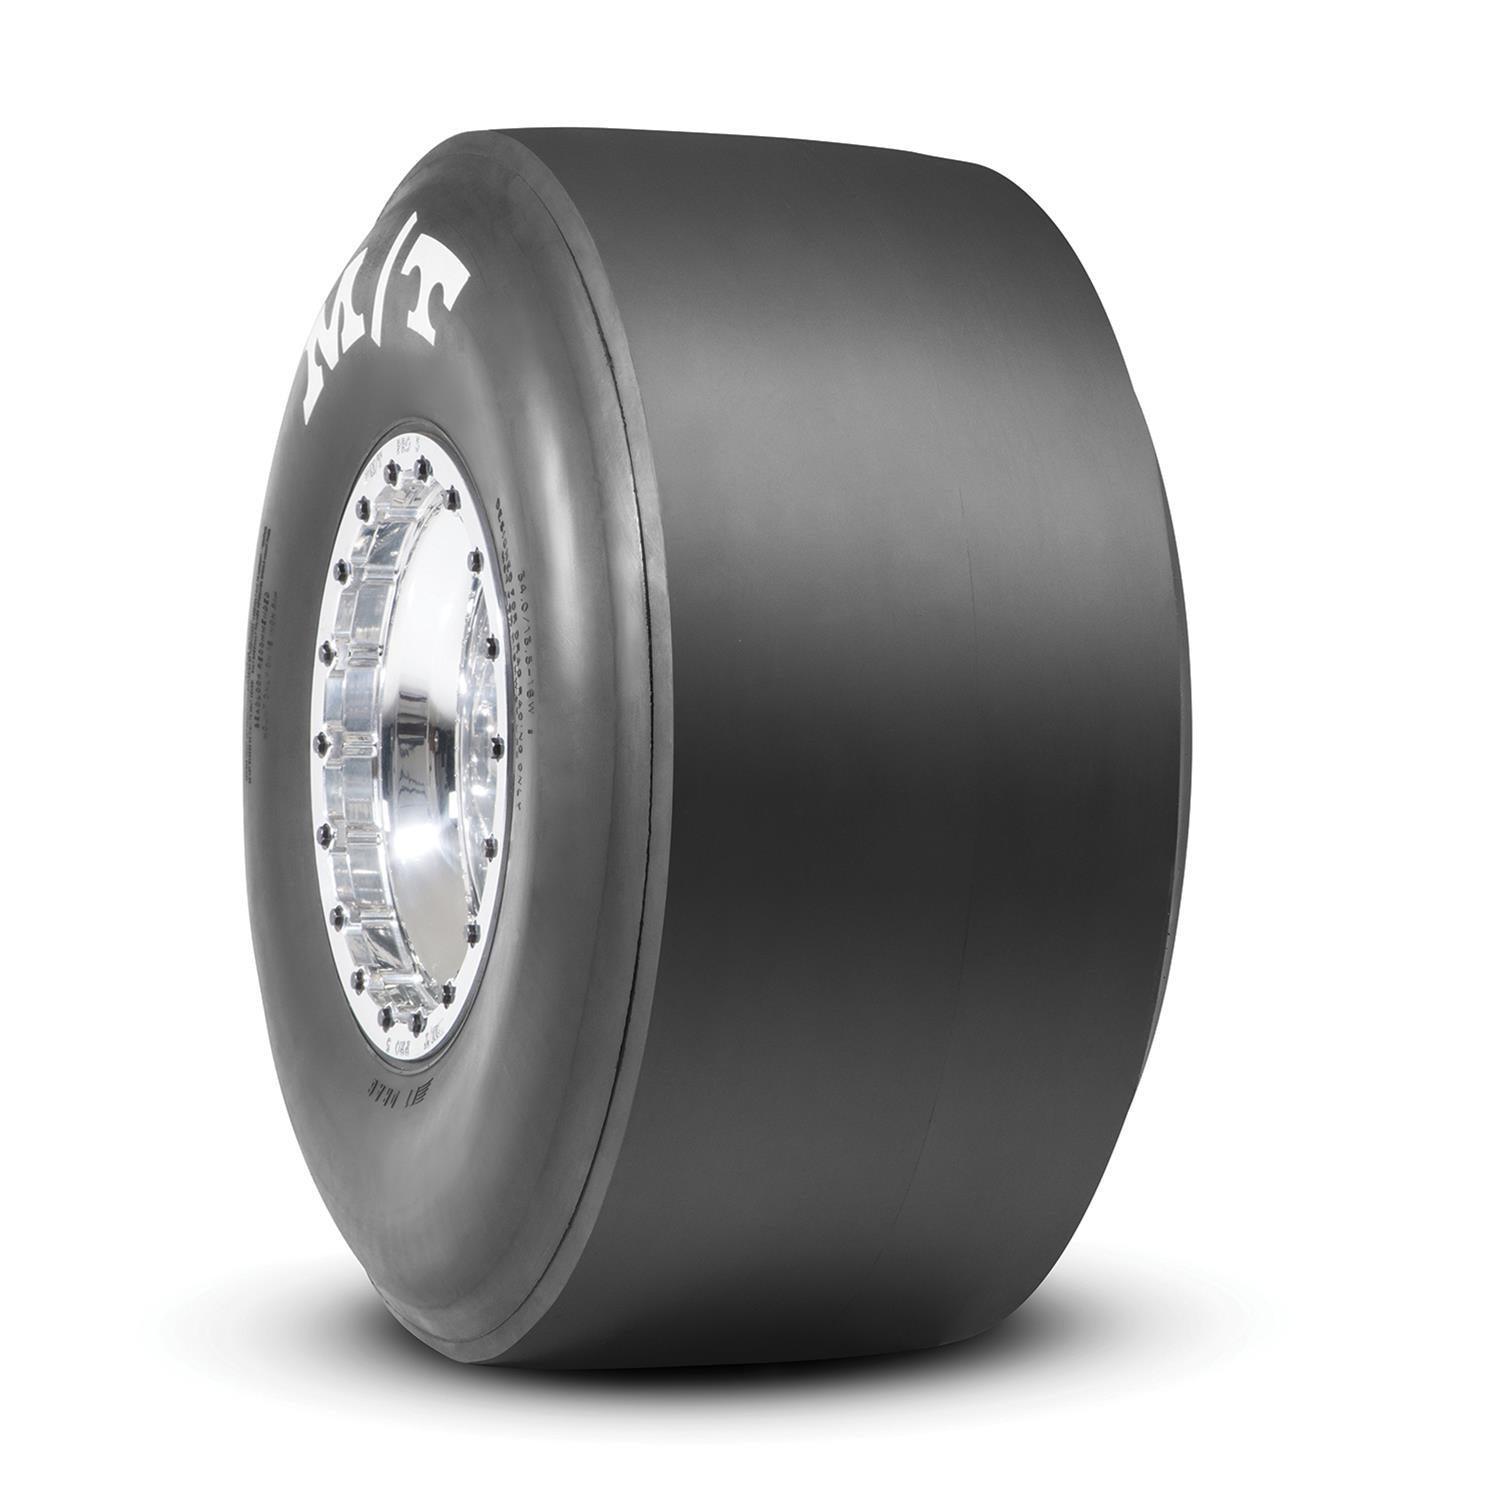 35.0/15.0-16 ET Drag Tire - Burlile Performance Products